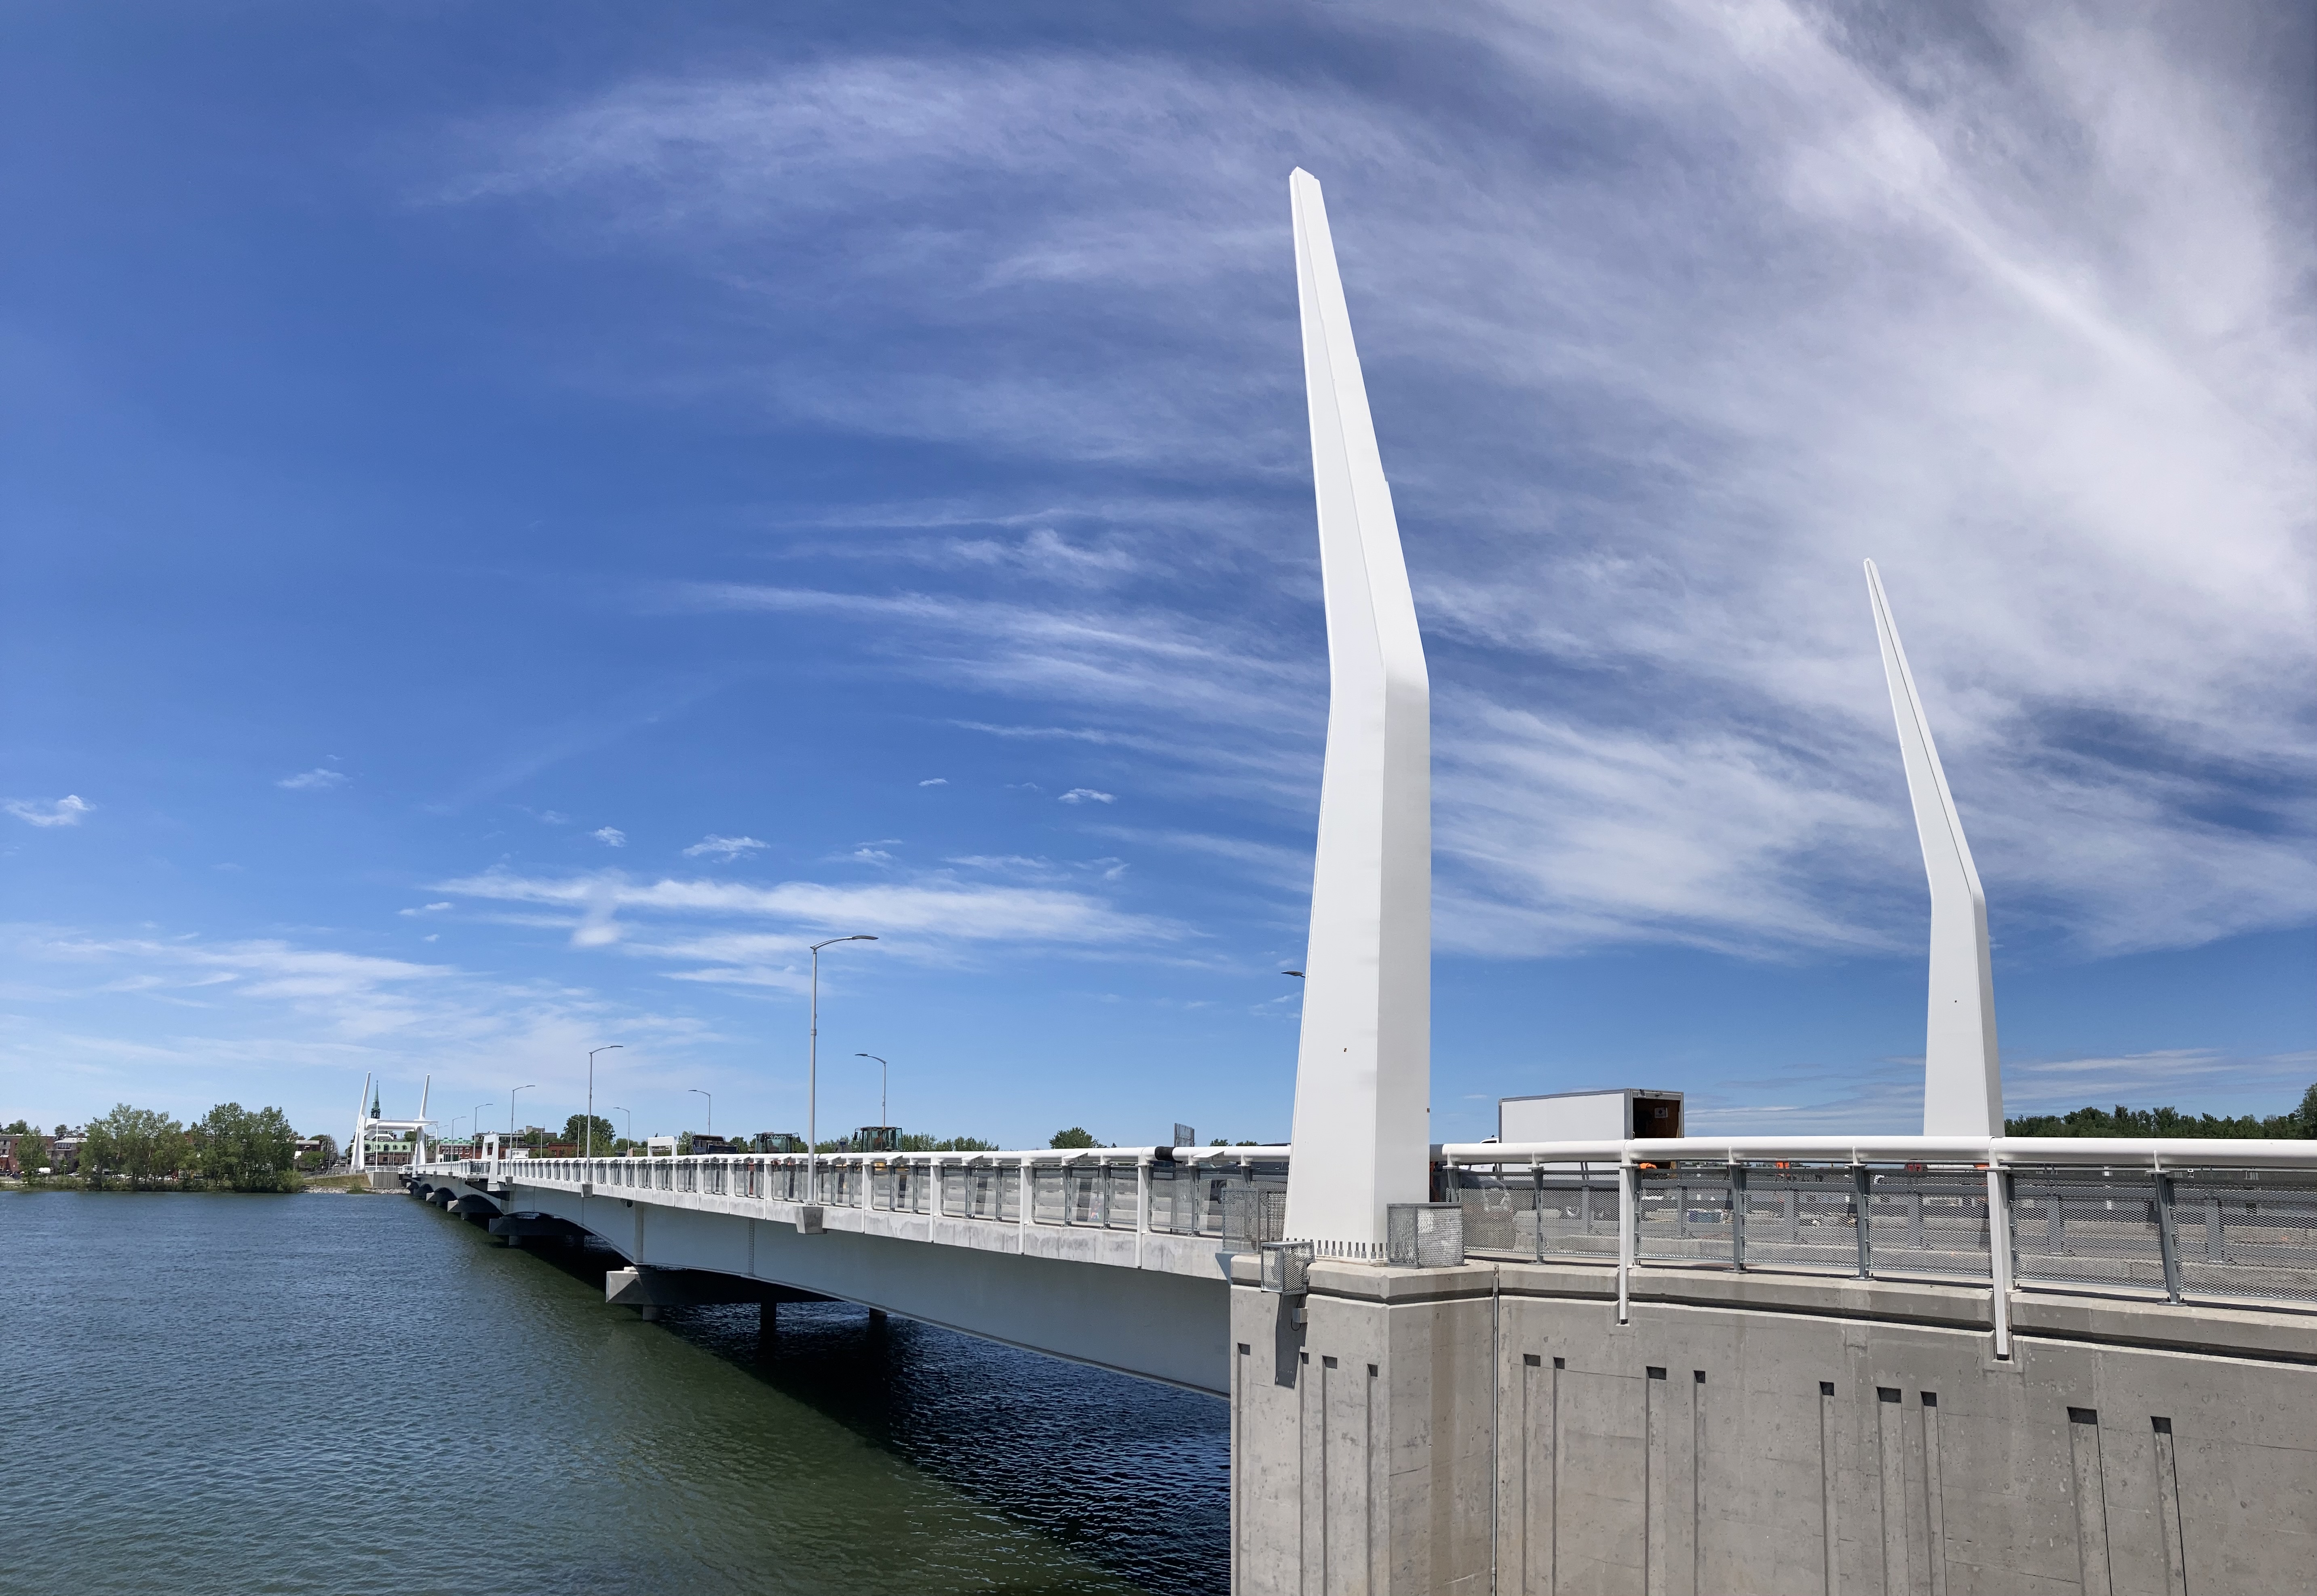 Juin 2021 – Partie fixe du pont et ses mâts architecturaux